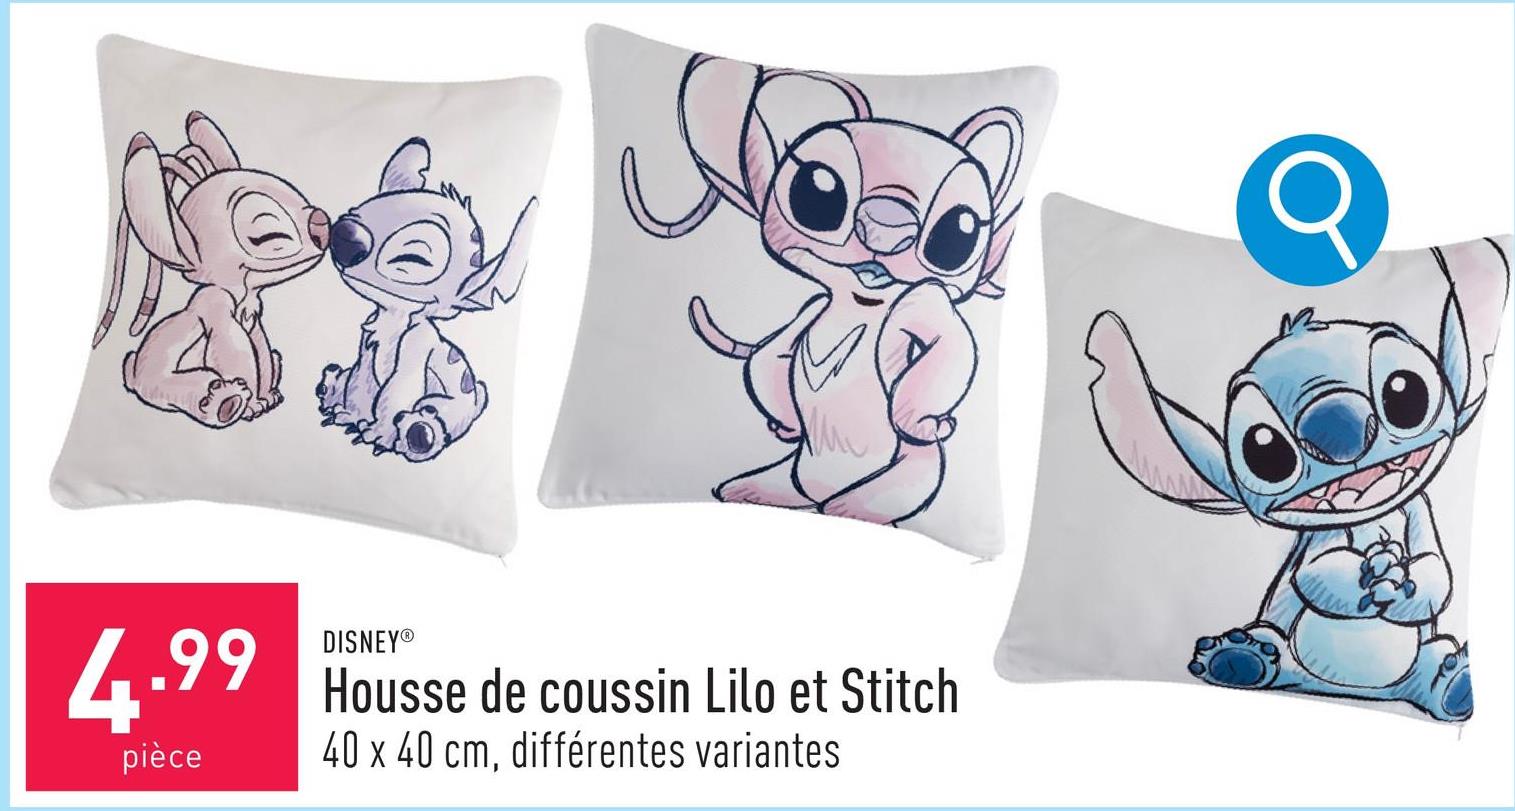 4.99
pièce
DISNEY®
Housse de coussin Lilo et Stitch
40 x 40 cm, différentes variantes